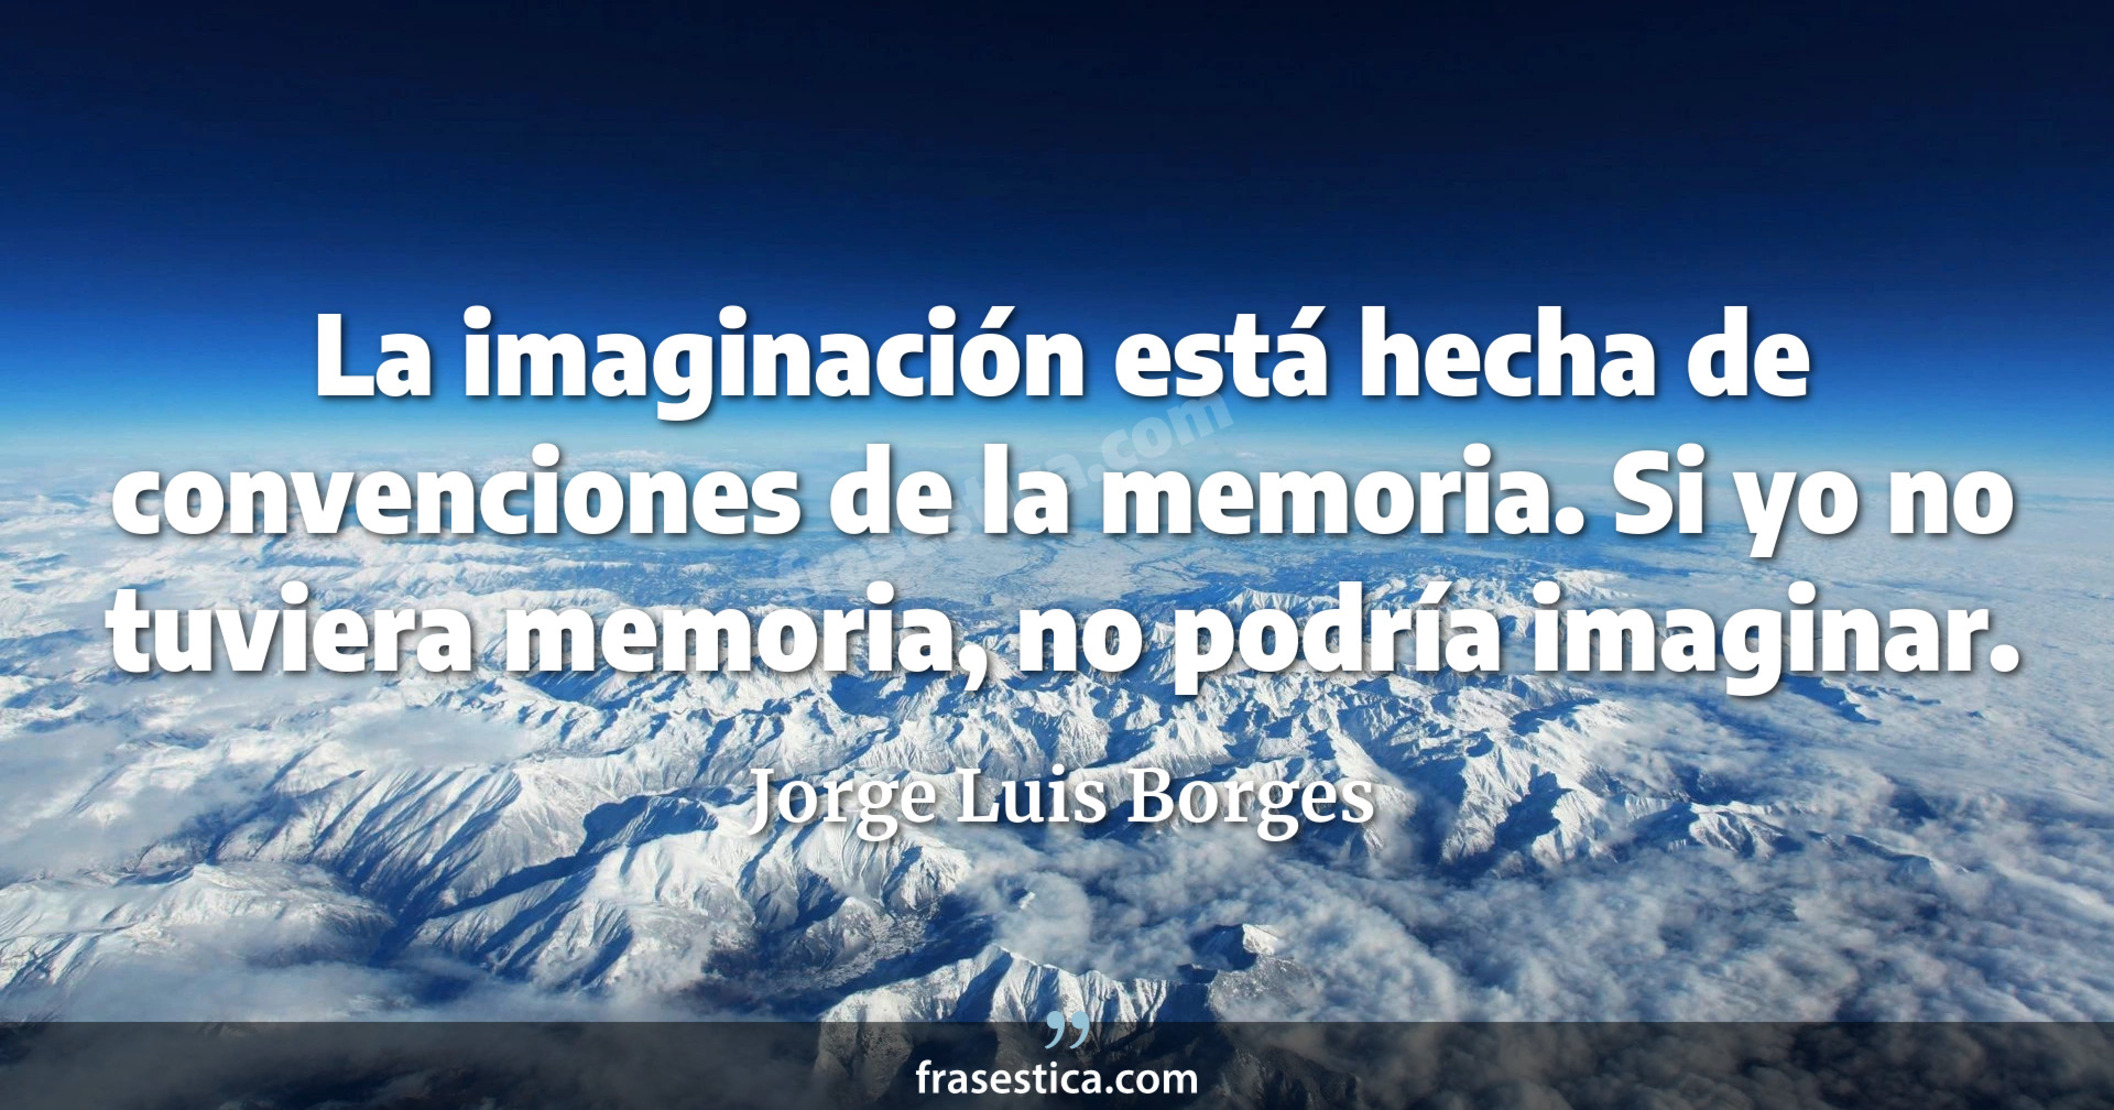 La imaginación está hecha de convenciones de la memoria. Si yo no tuviera memoria, no podría imaginar. - Jorge Luis Borges